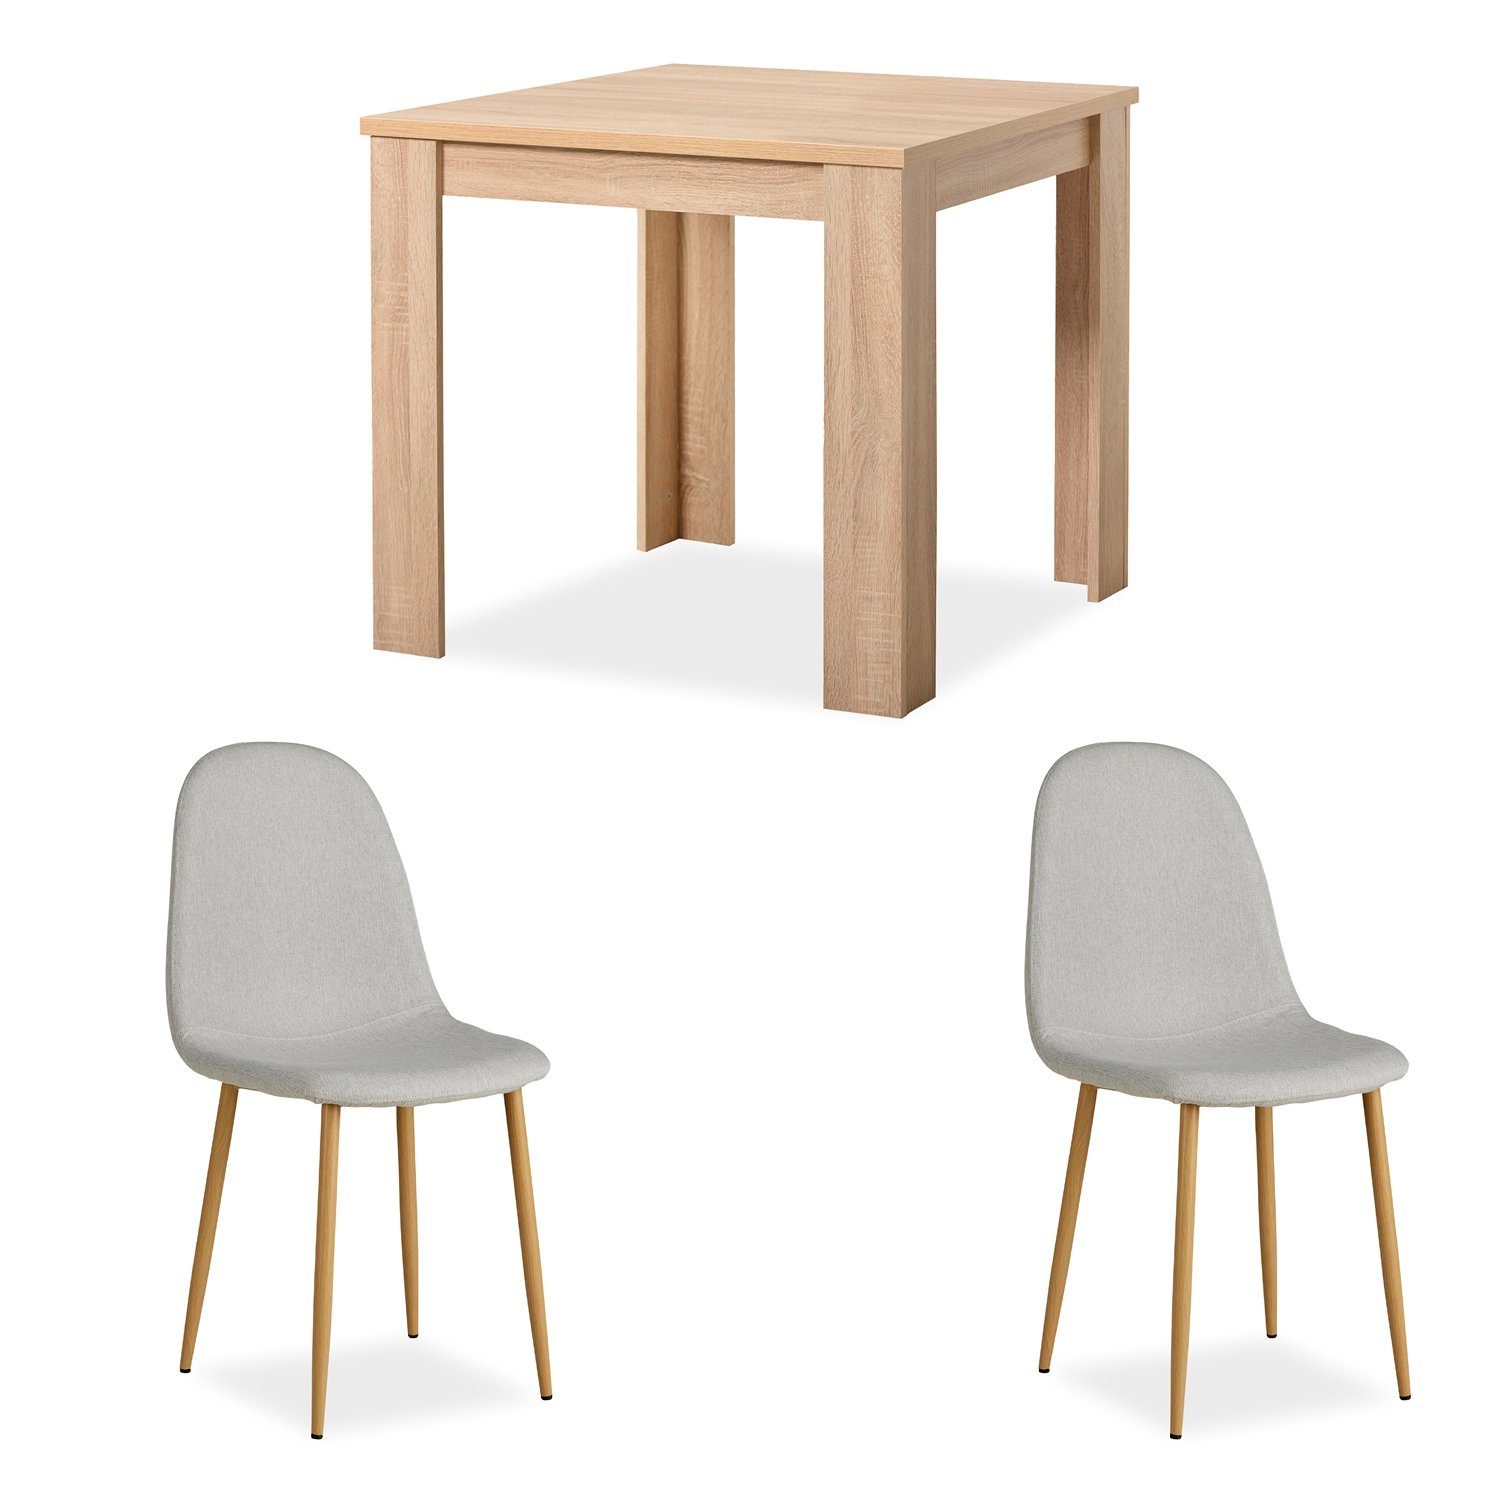 Homestyle4u Essgruppe Tisch mit 2 Stühlen Esstisch 80x80 Holz Natur Grau, (Komplett-Set, 3-tlg)